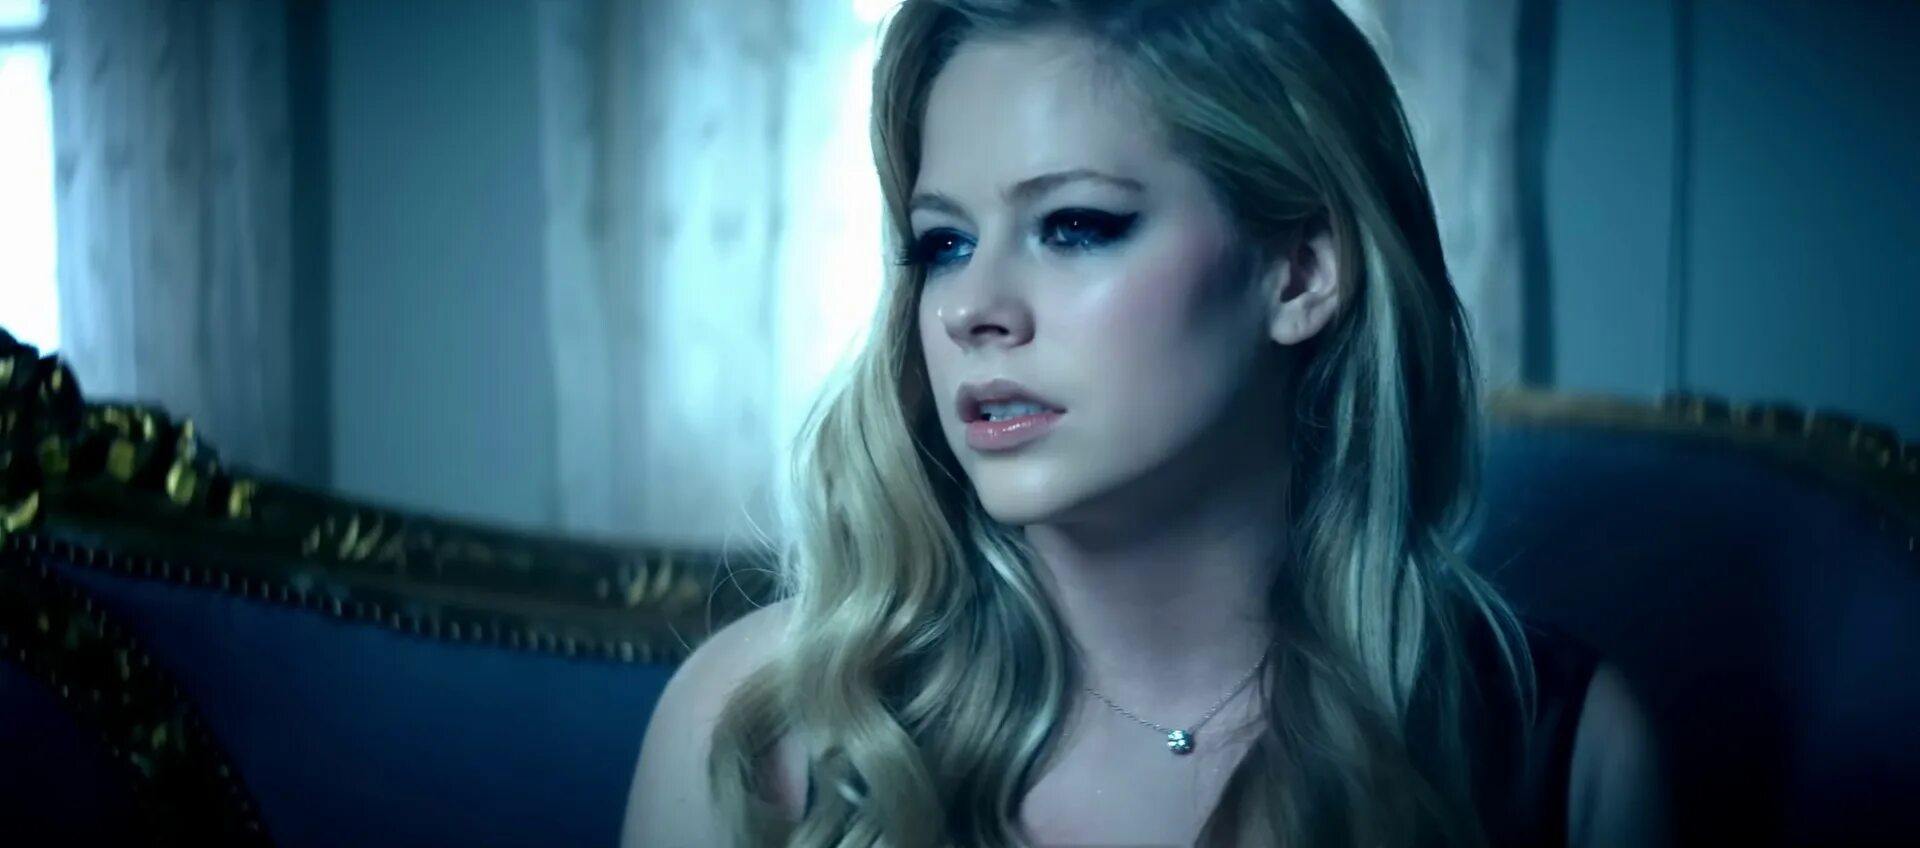 Аврил Лавин 2022. Аврил Лавин лет ми гоу. Avril Lavigne - Let me go ft. Chad Kroeger. Аврил Лавин первый клип. Лет ми гоу песня